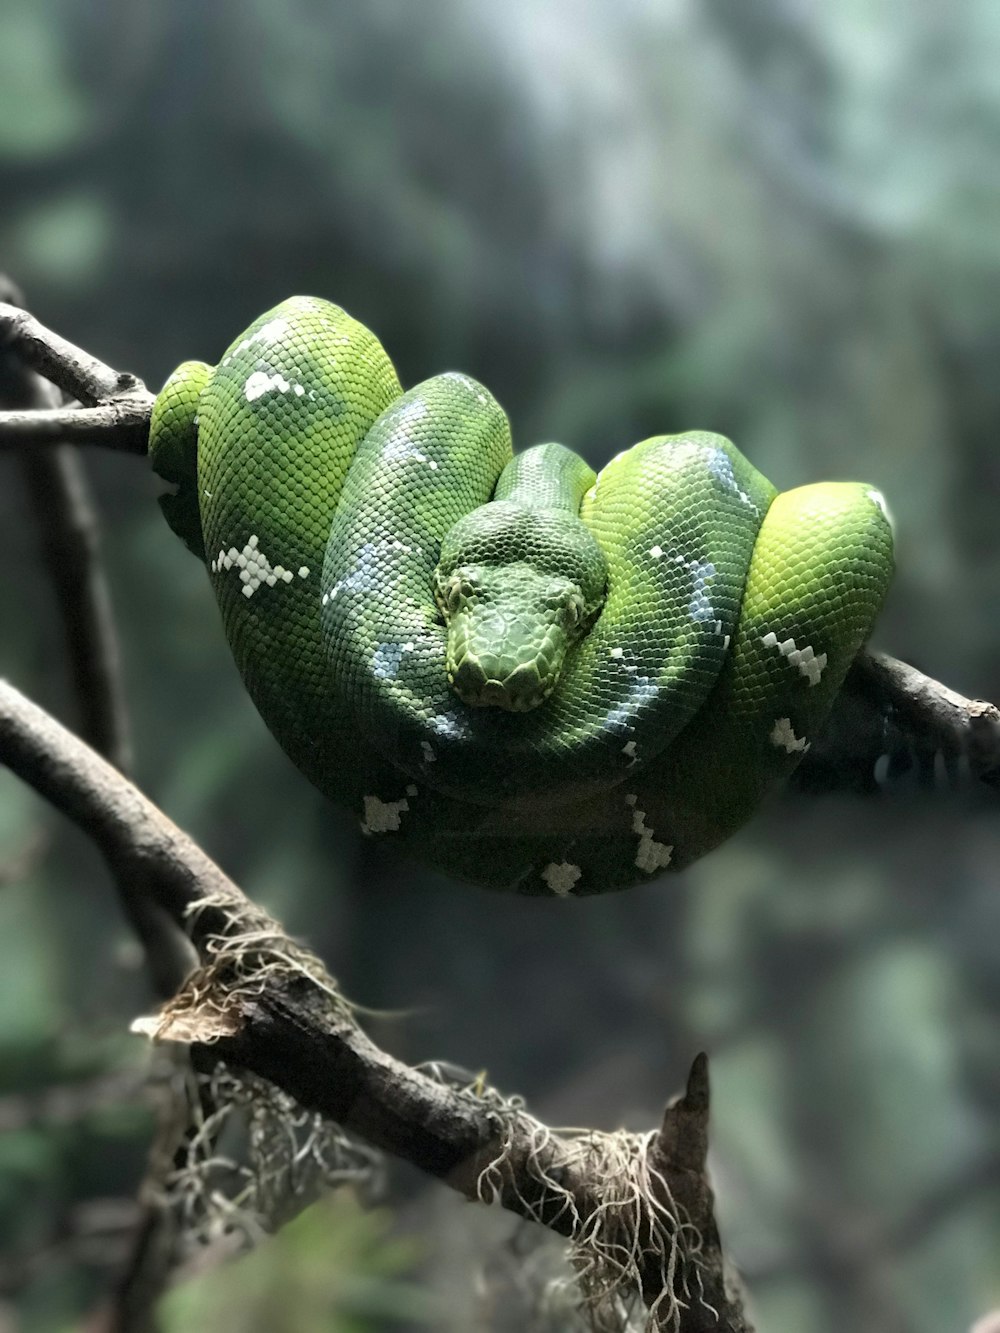 Serpiente verde sobre ramita gris en fotografía de enfoque selectivo